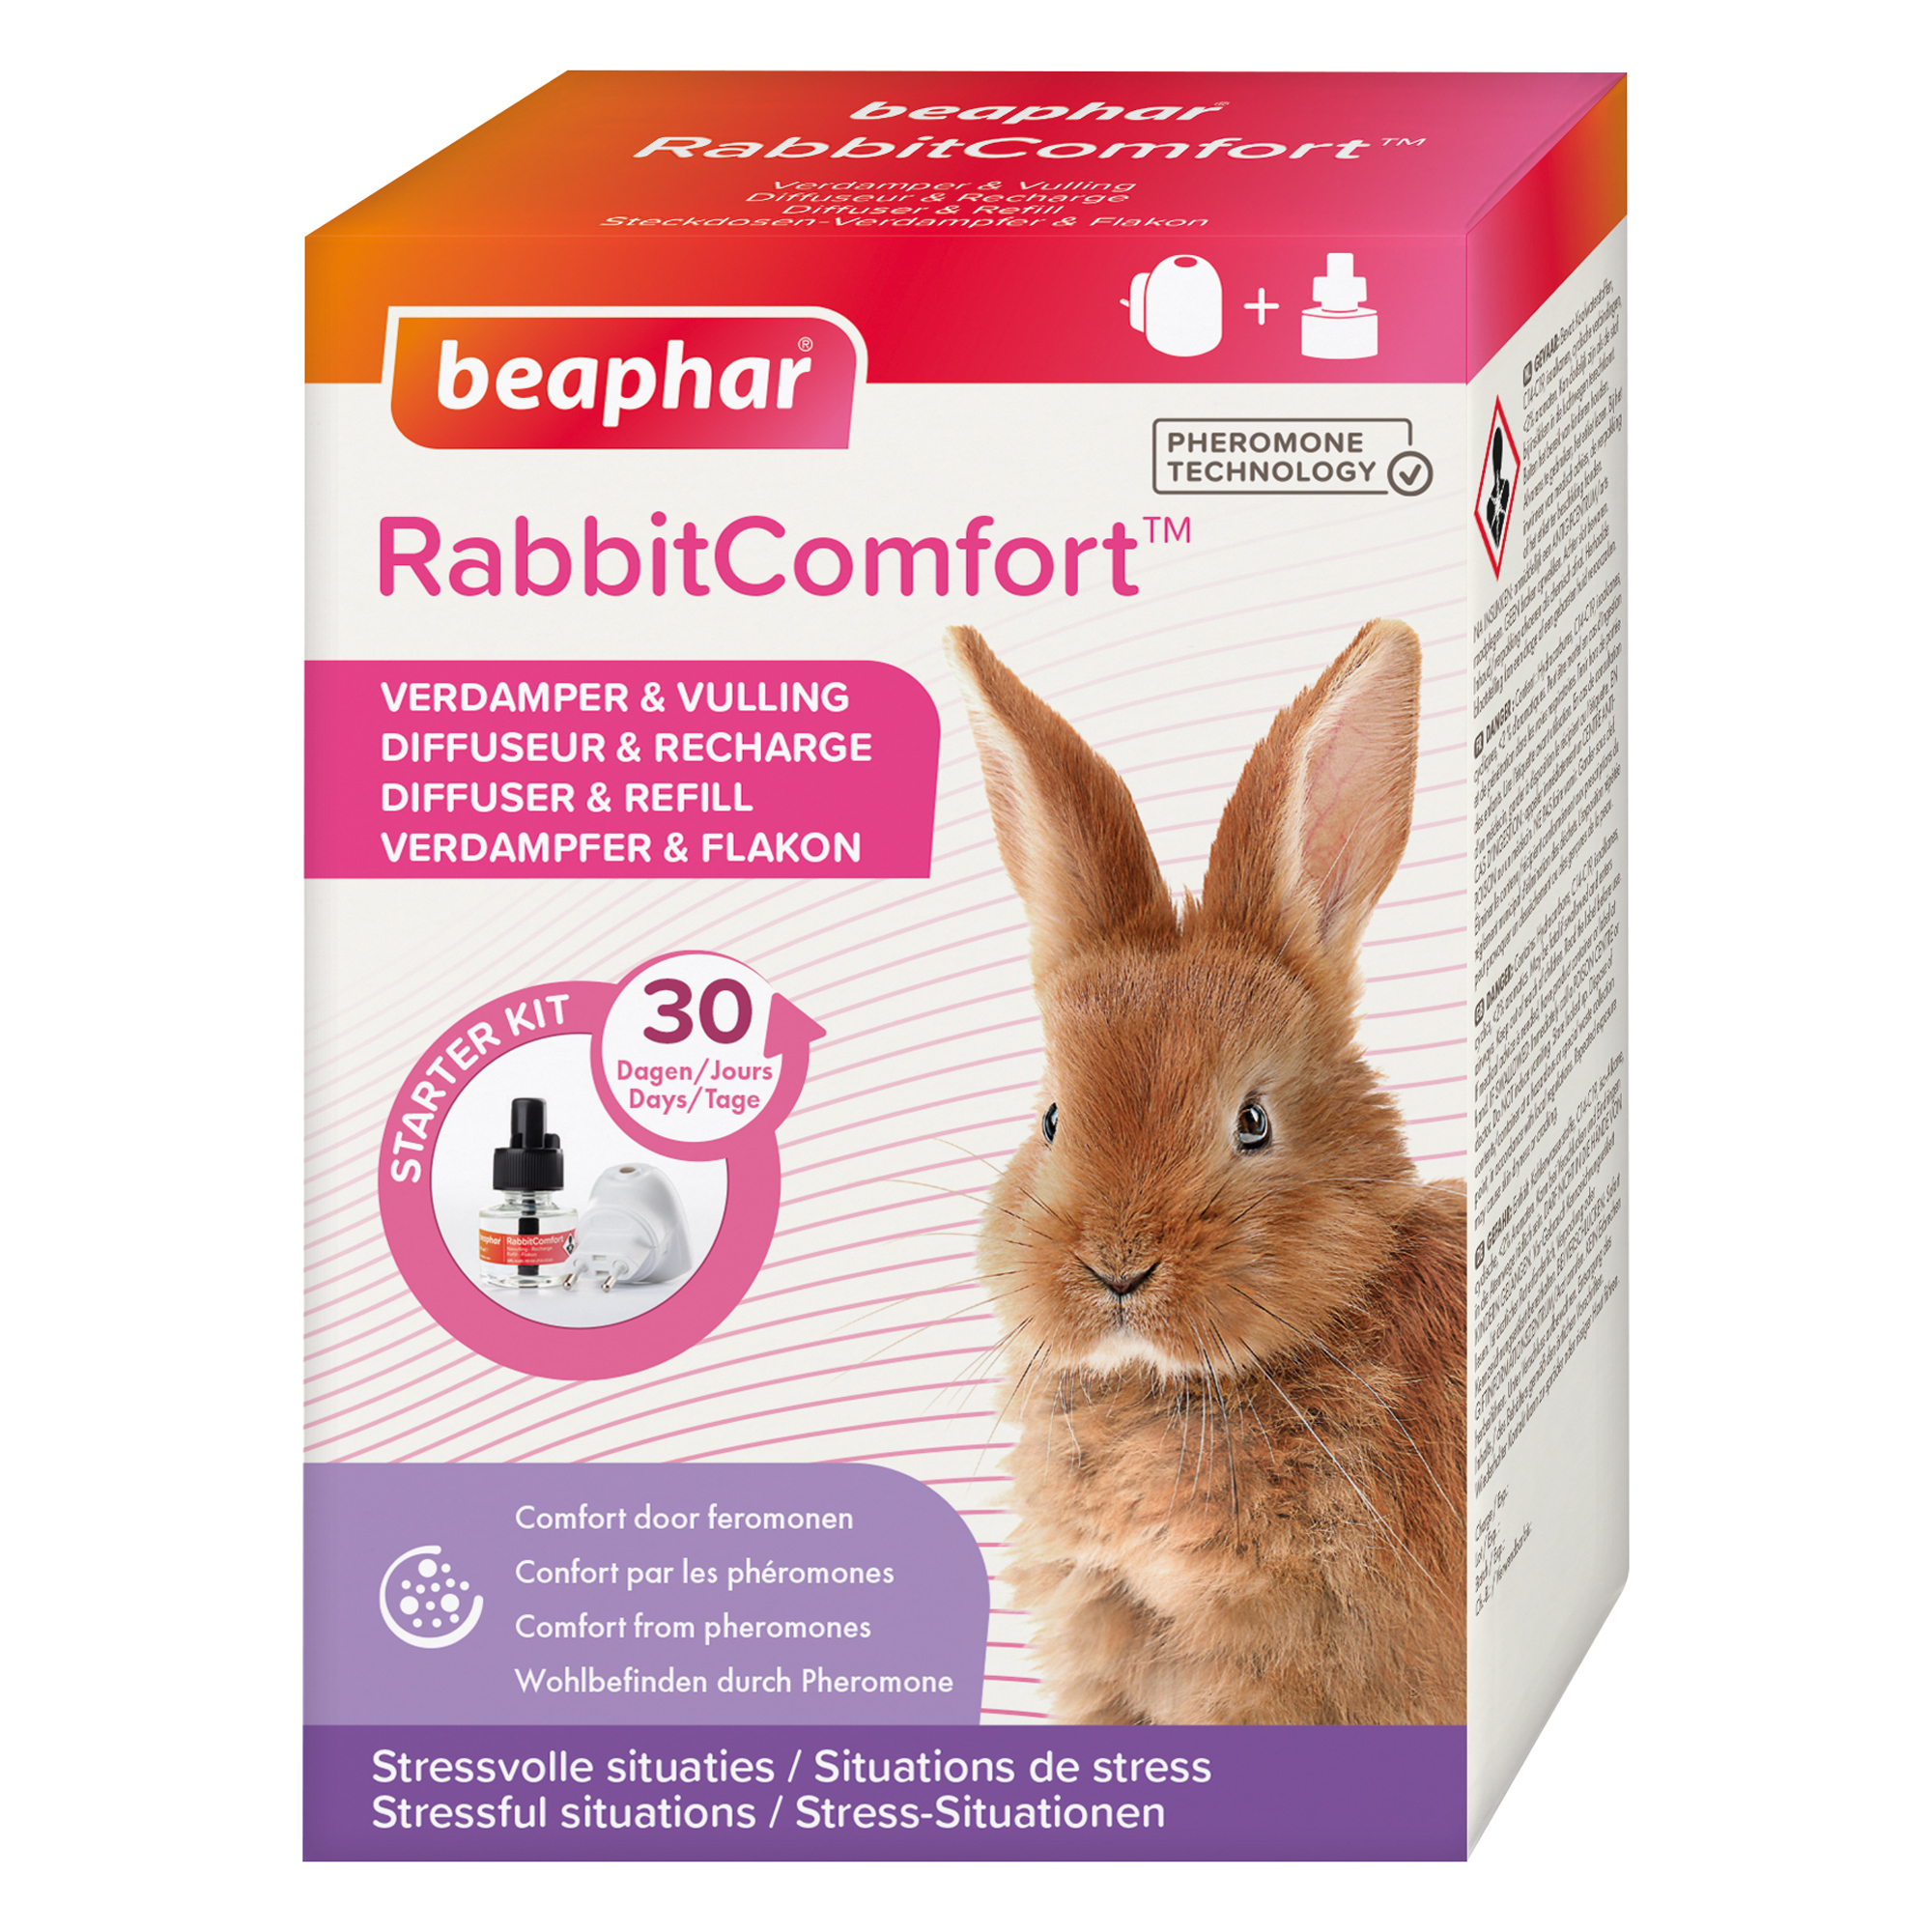 RabbitComfort Verdamper & vulling